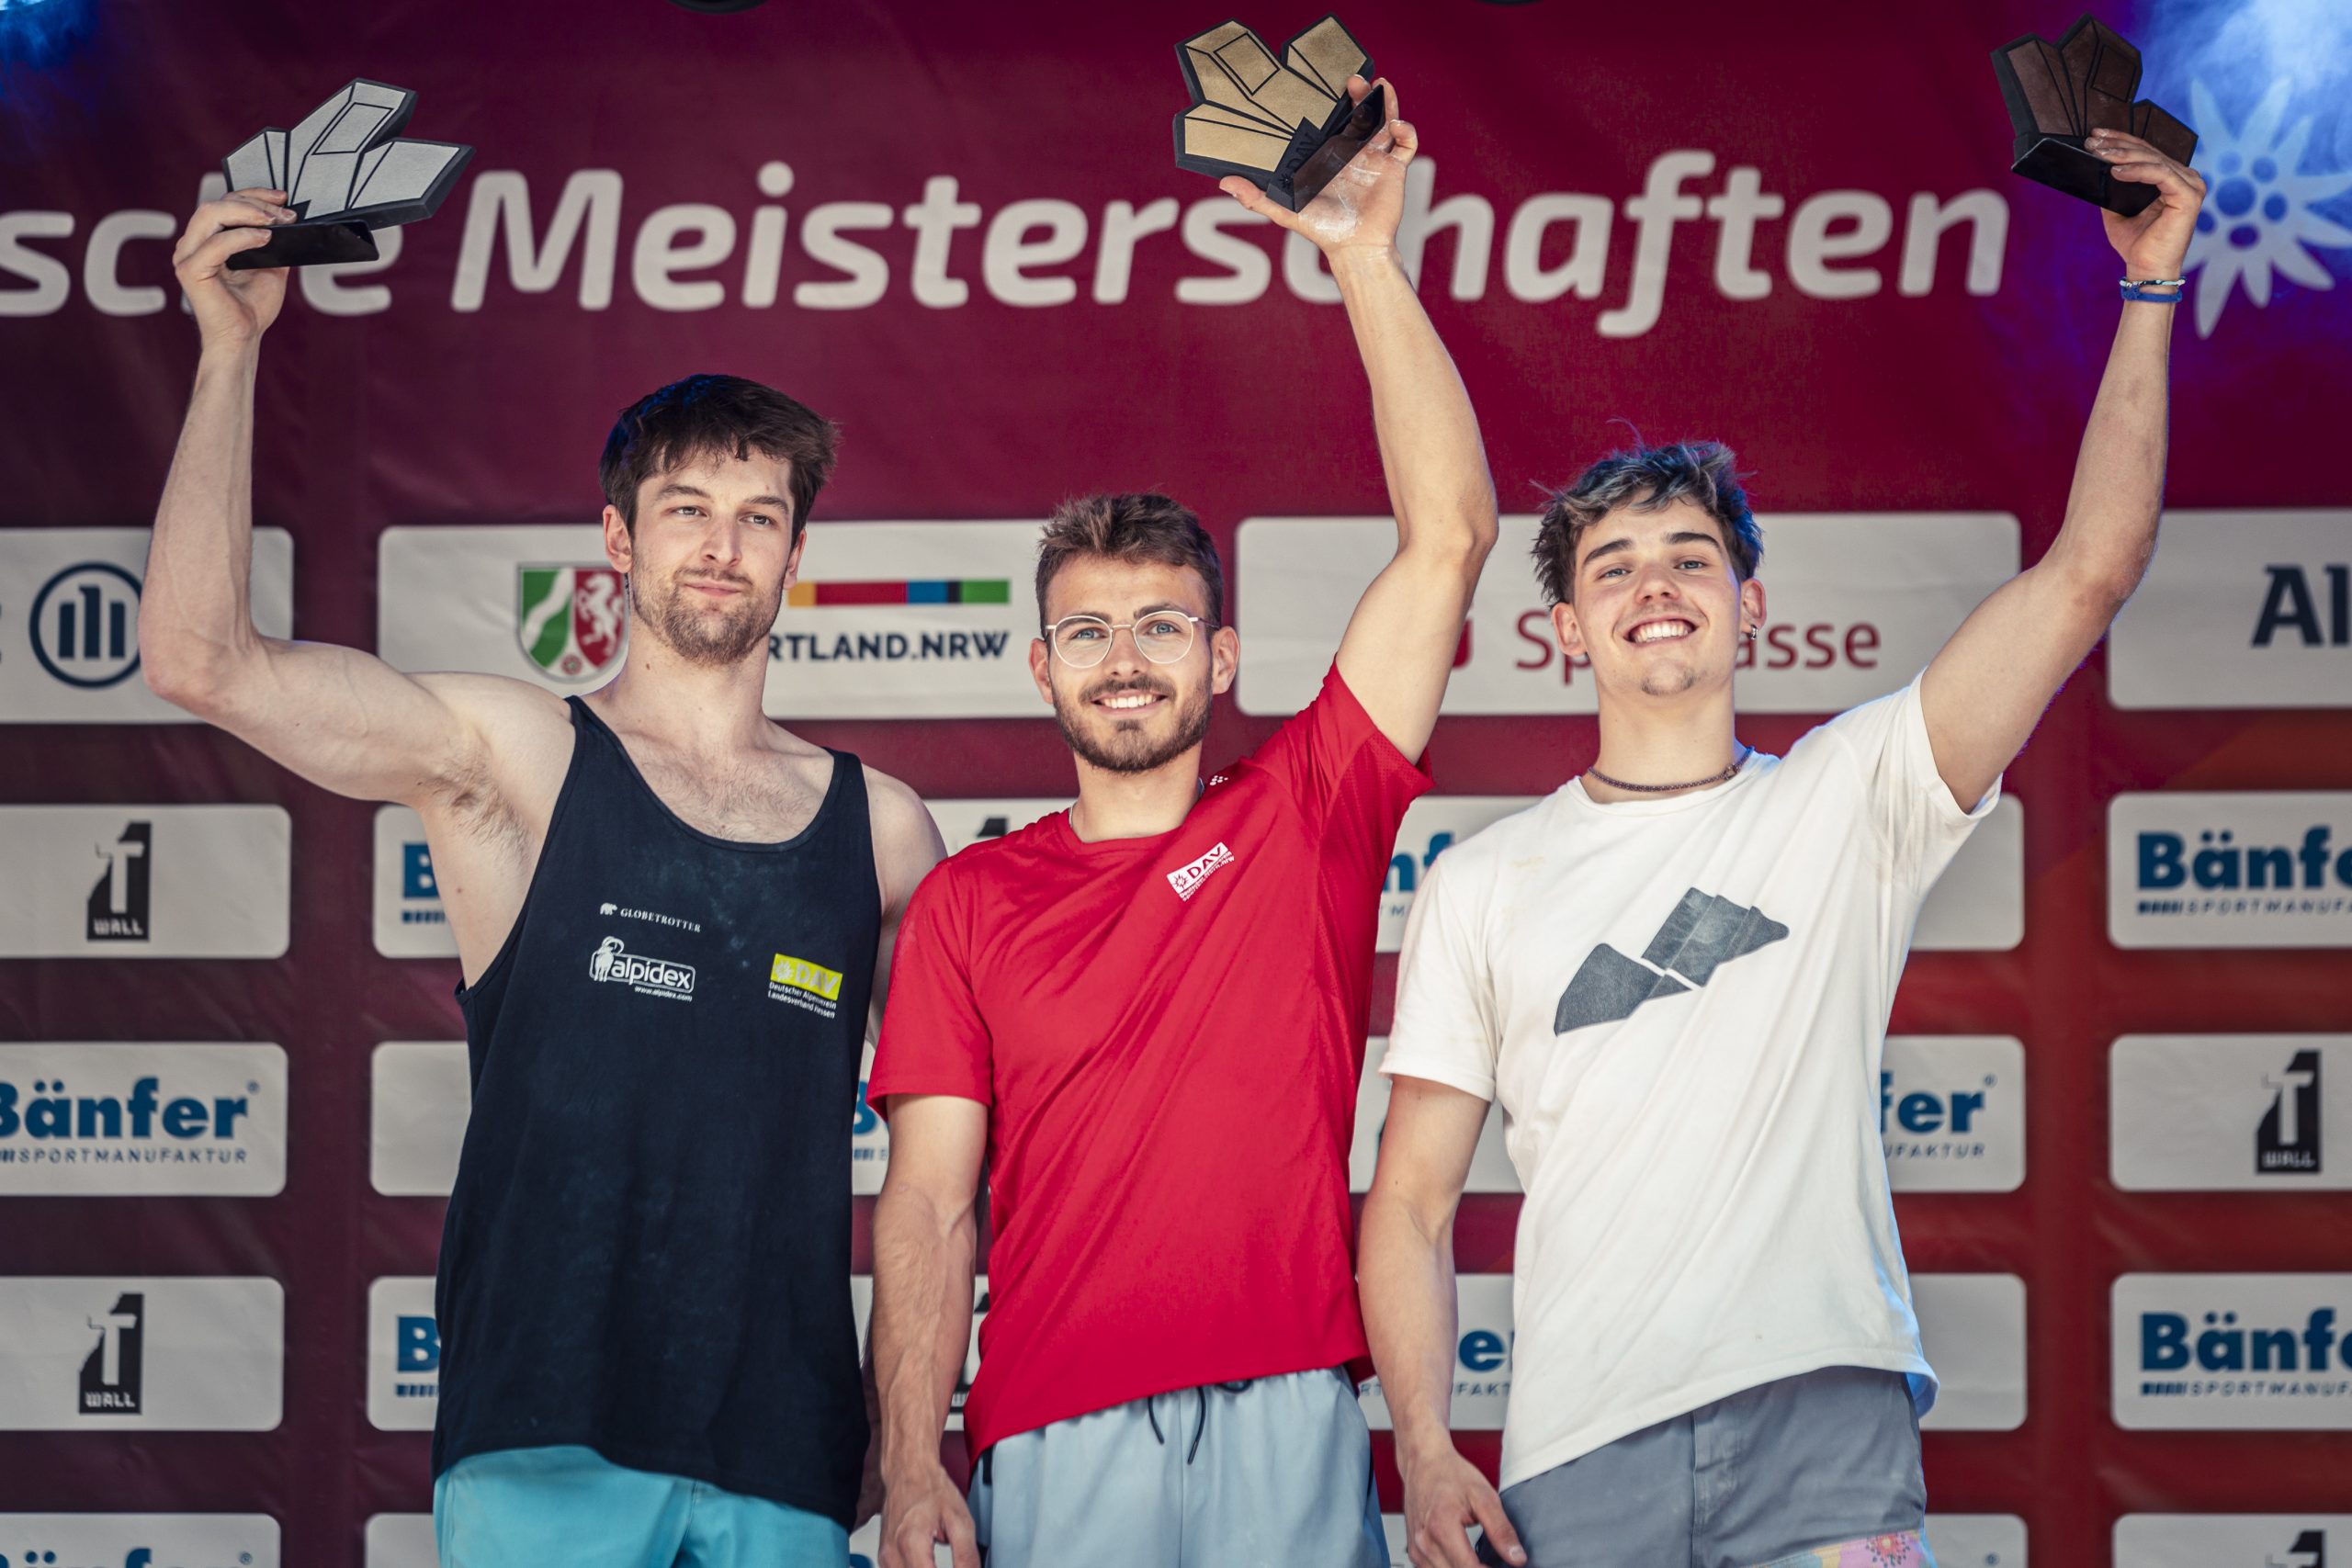 Die Gewinner bei den deutschen Meisterschaften im Bouldern (v.l.n.r.): Jan Hojer (Silber), Yannick Flohé (Gold) und Emil Zimmermann (Bronze). Foto: Eugen Shkolnikov